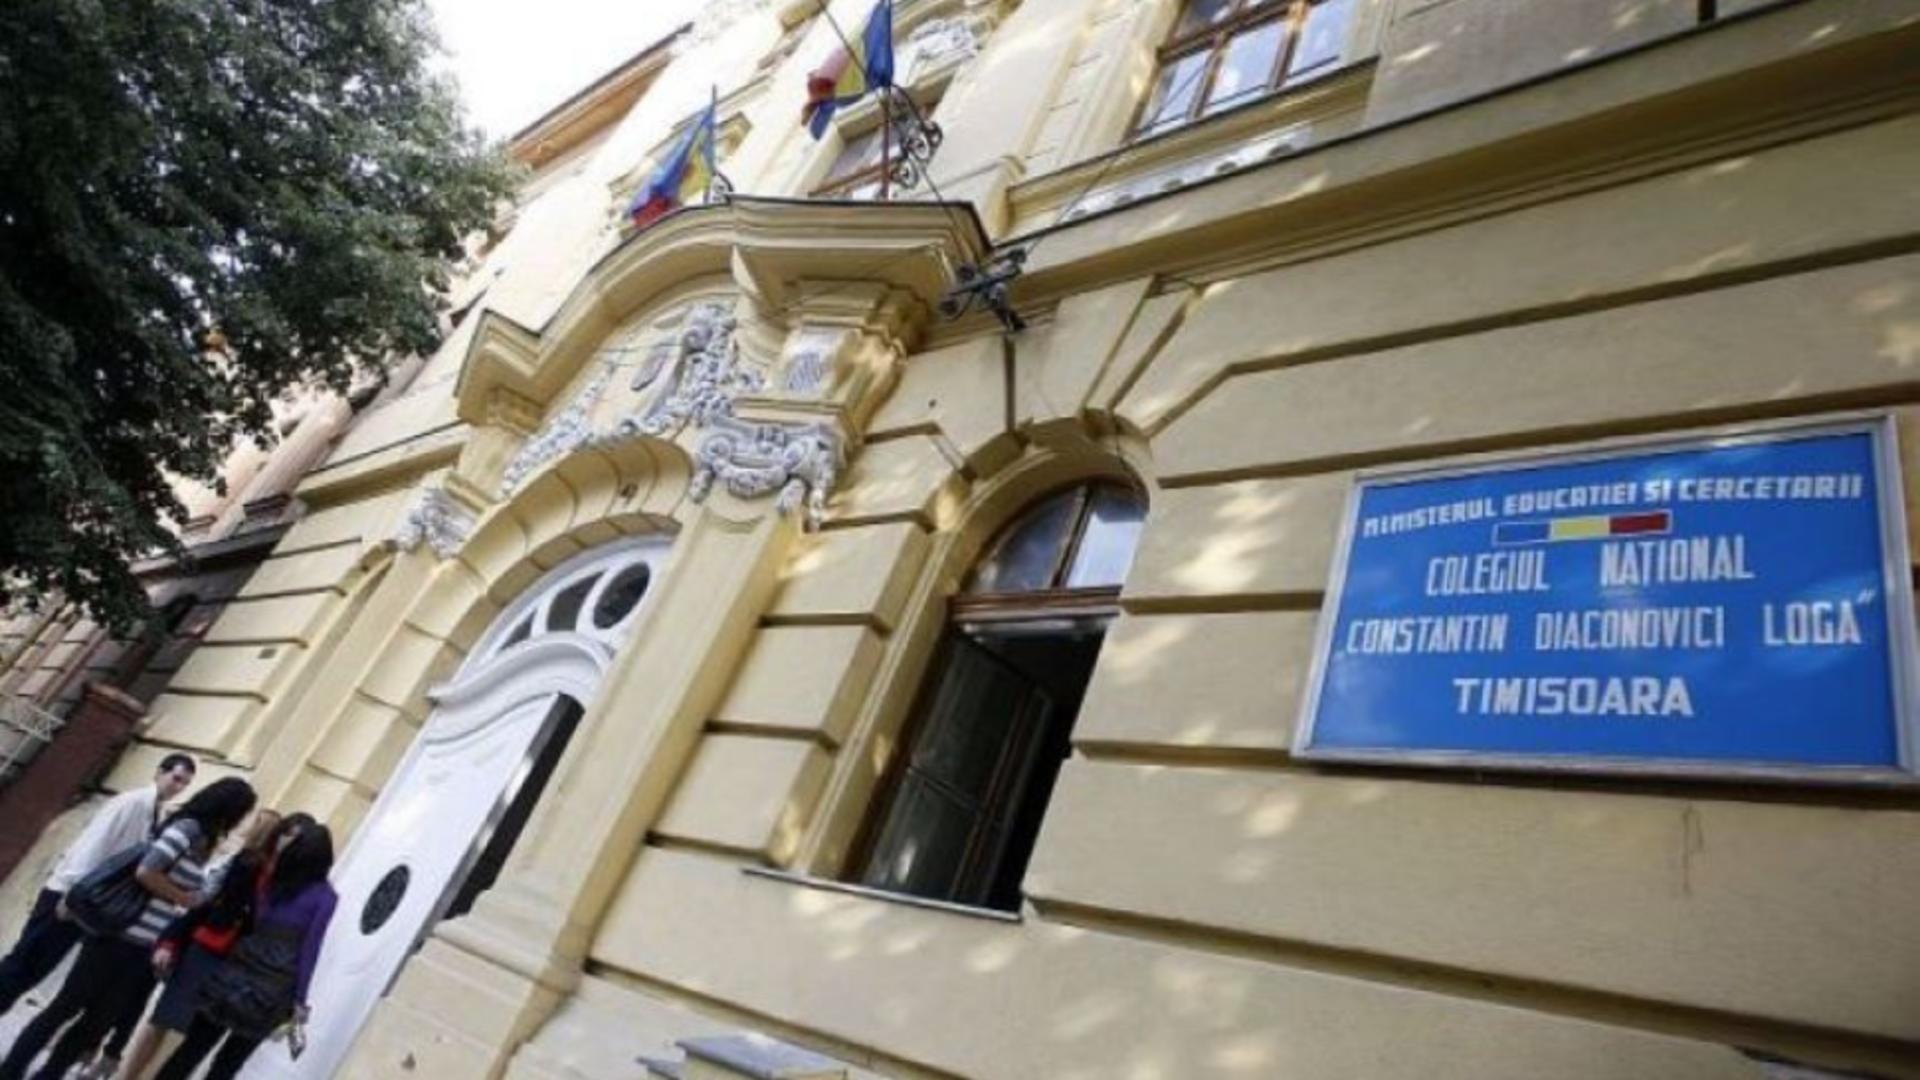 Zeci de elevi și profesori de la un liceu din Timișoara au ajuns la spital cu simptome de intoxicație. Momentan nu se cunoaște cauza